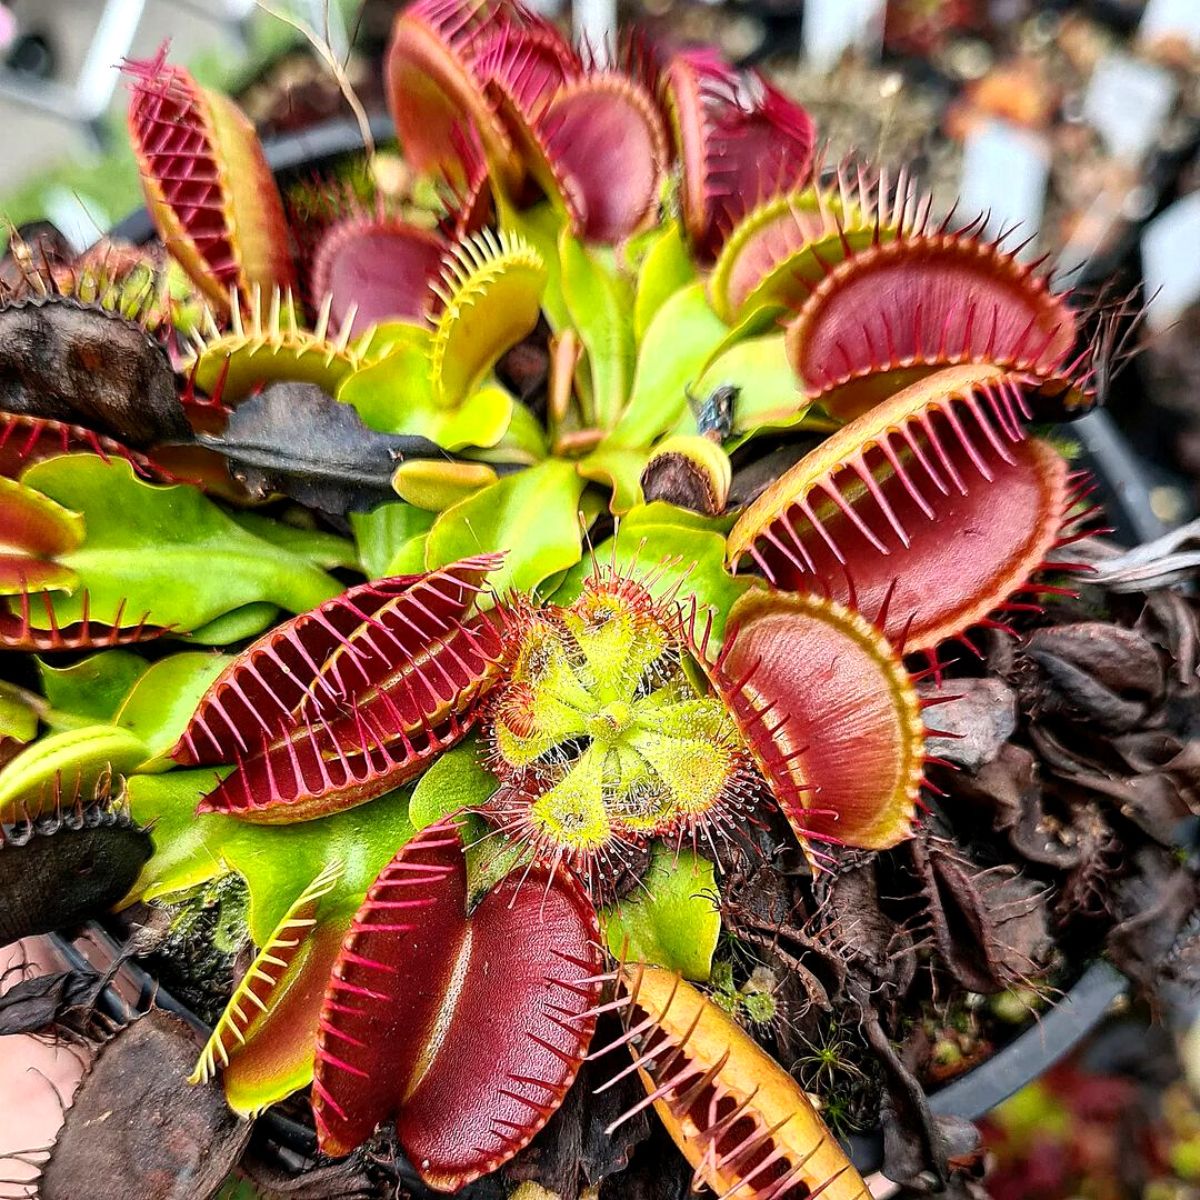 Strangest plants venus flytrap on Thursd